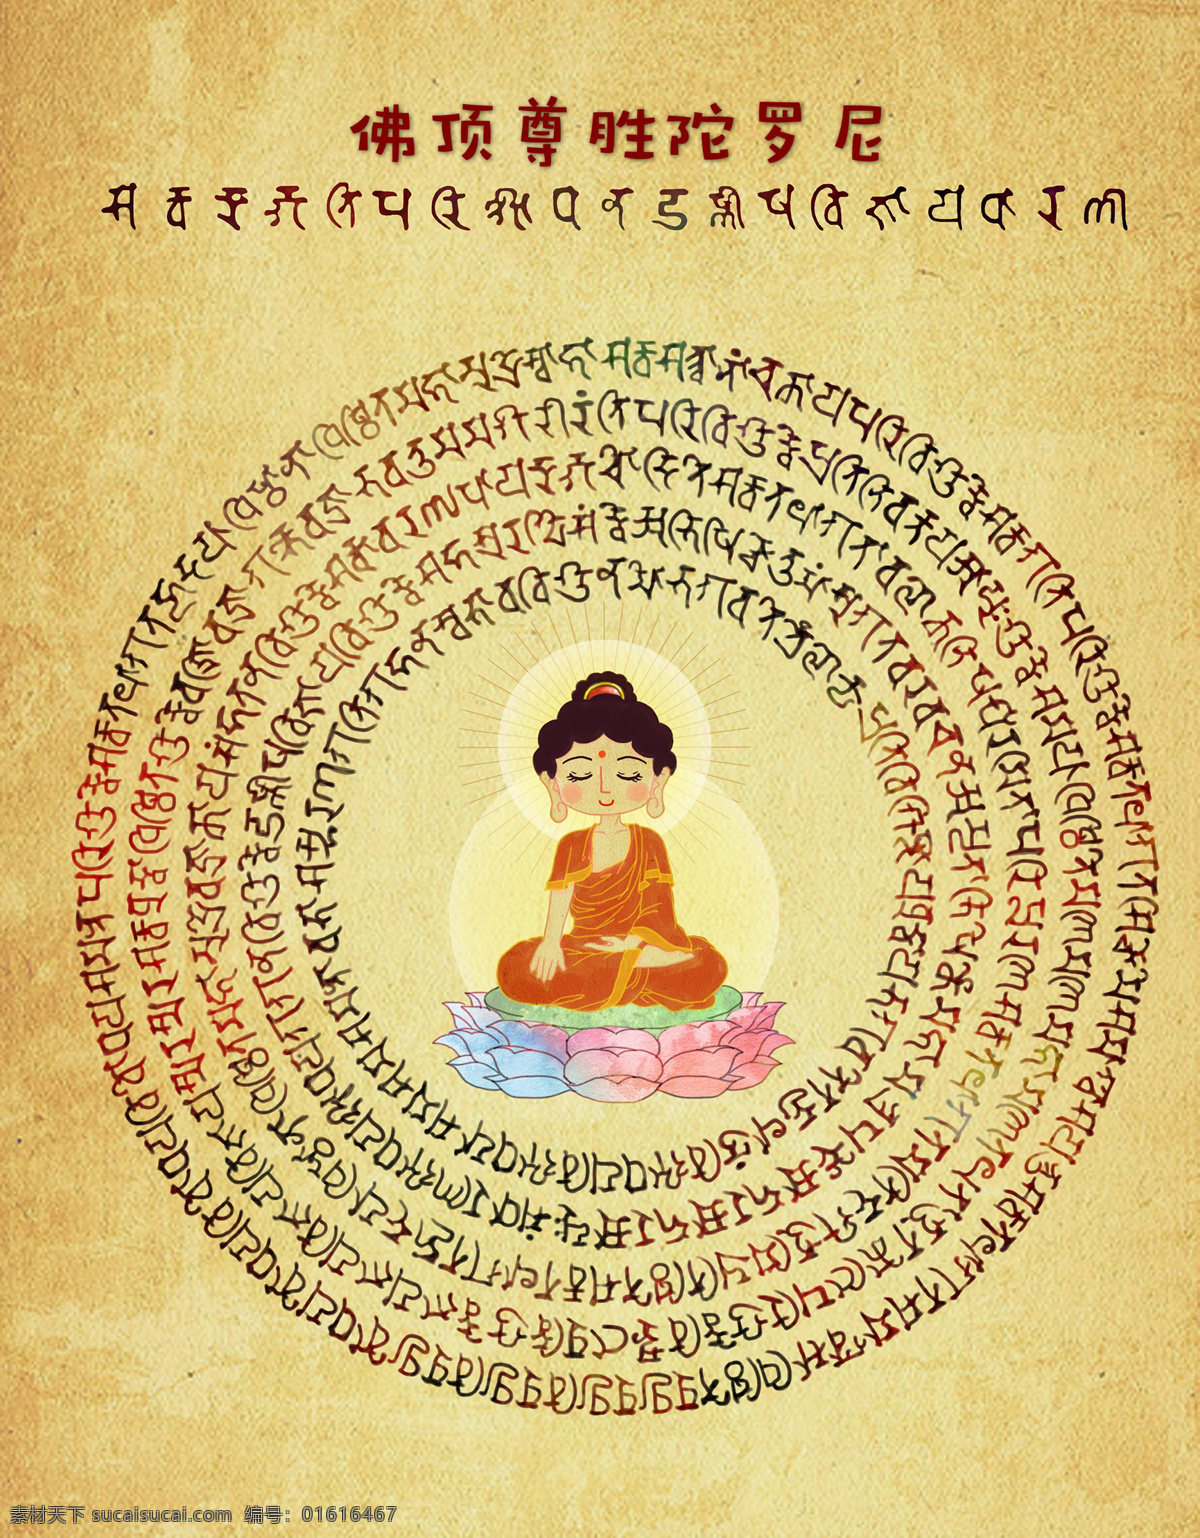 佛 顶 尊胜 陀罗尼 菩萨 咒语 手绘 文化艺术 宗教信仰